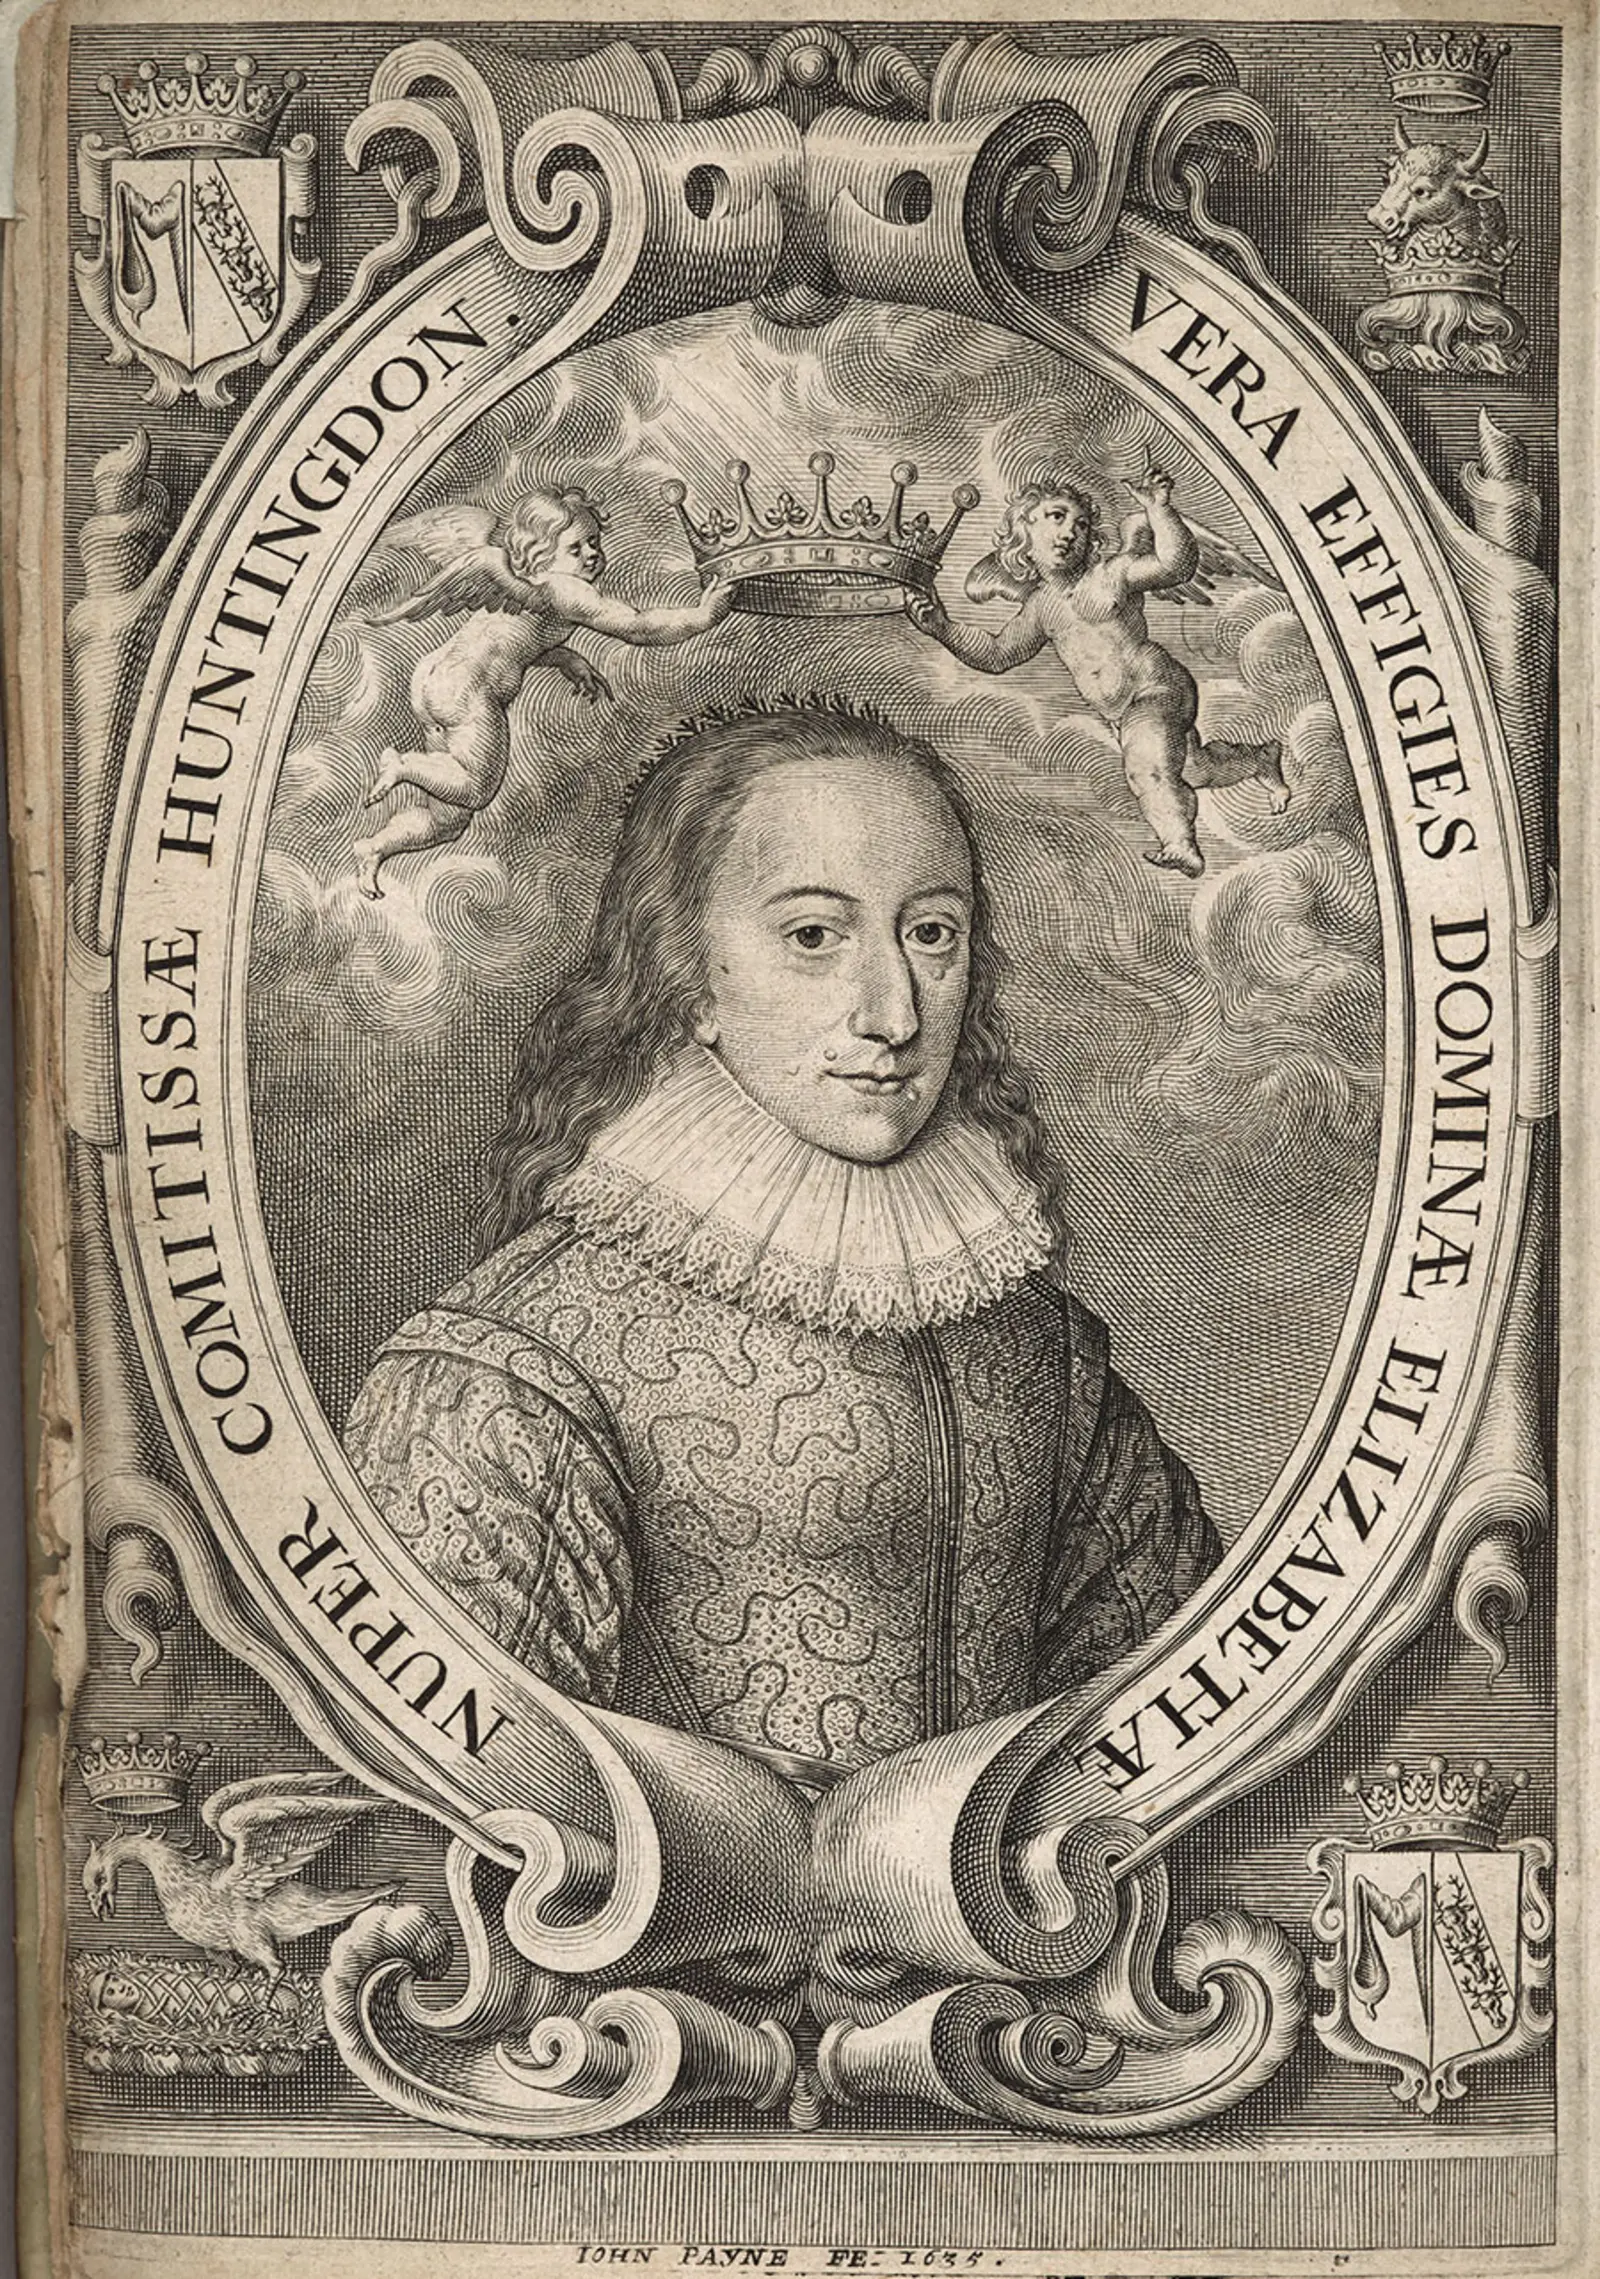 Engraving from 1635 of Elizabeth Stanley Hastings